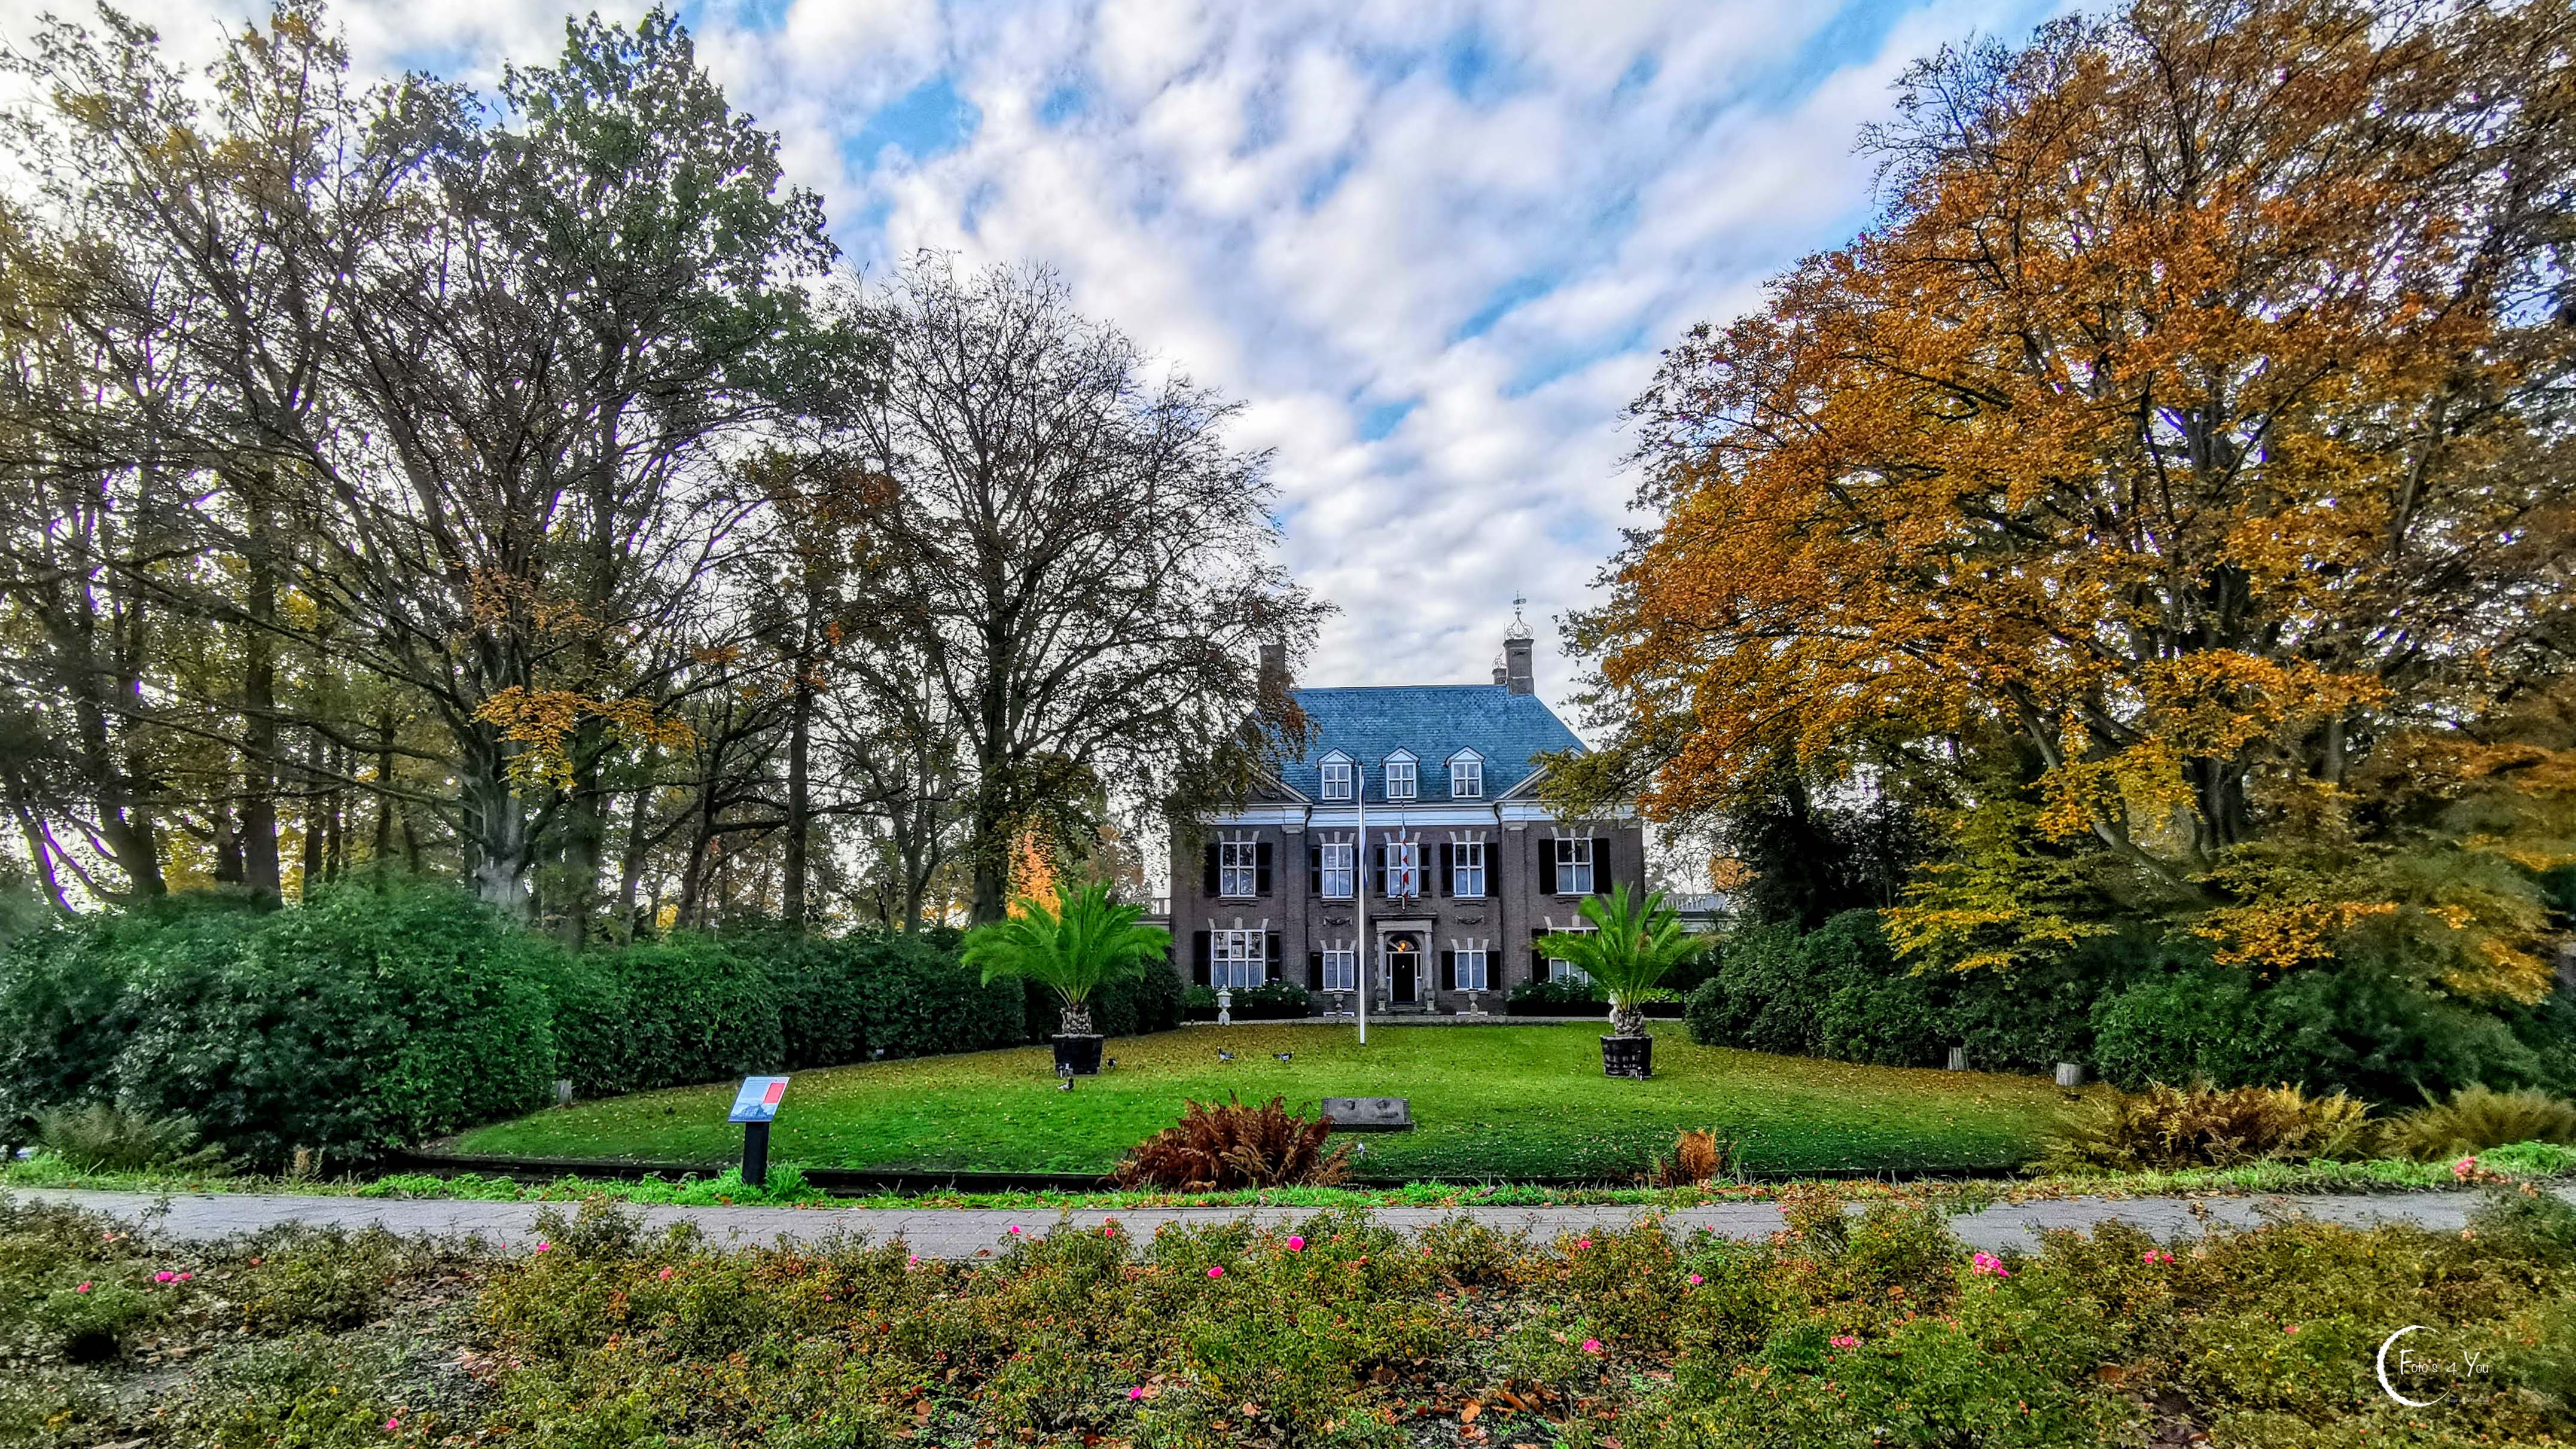 Villa de Laak in Eindhoven